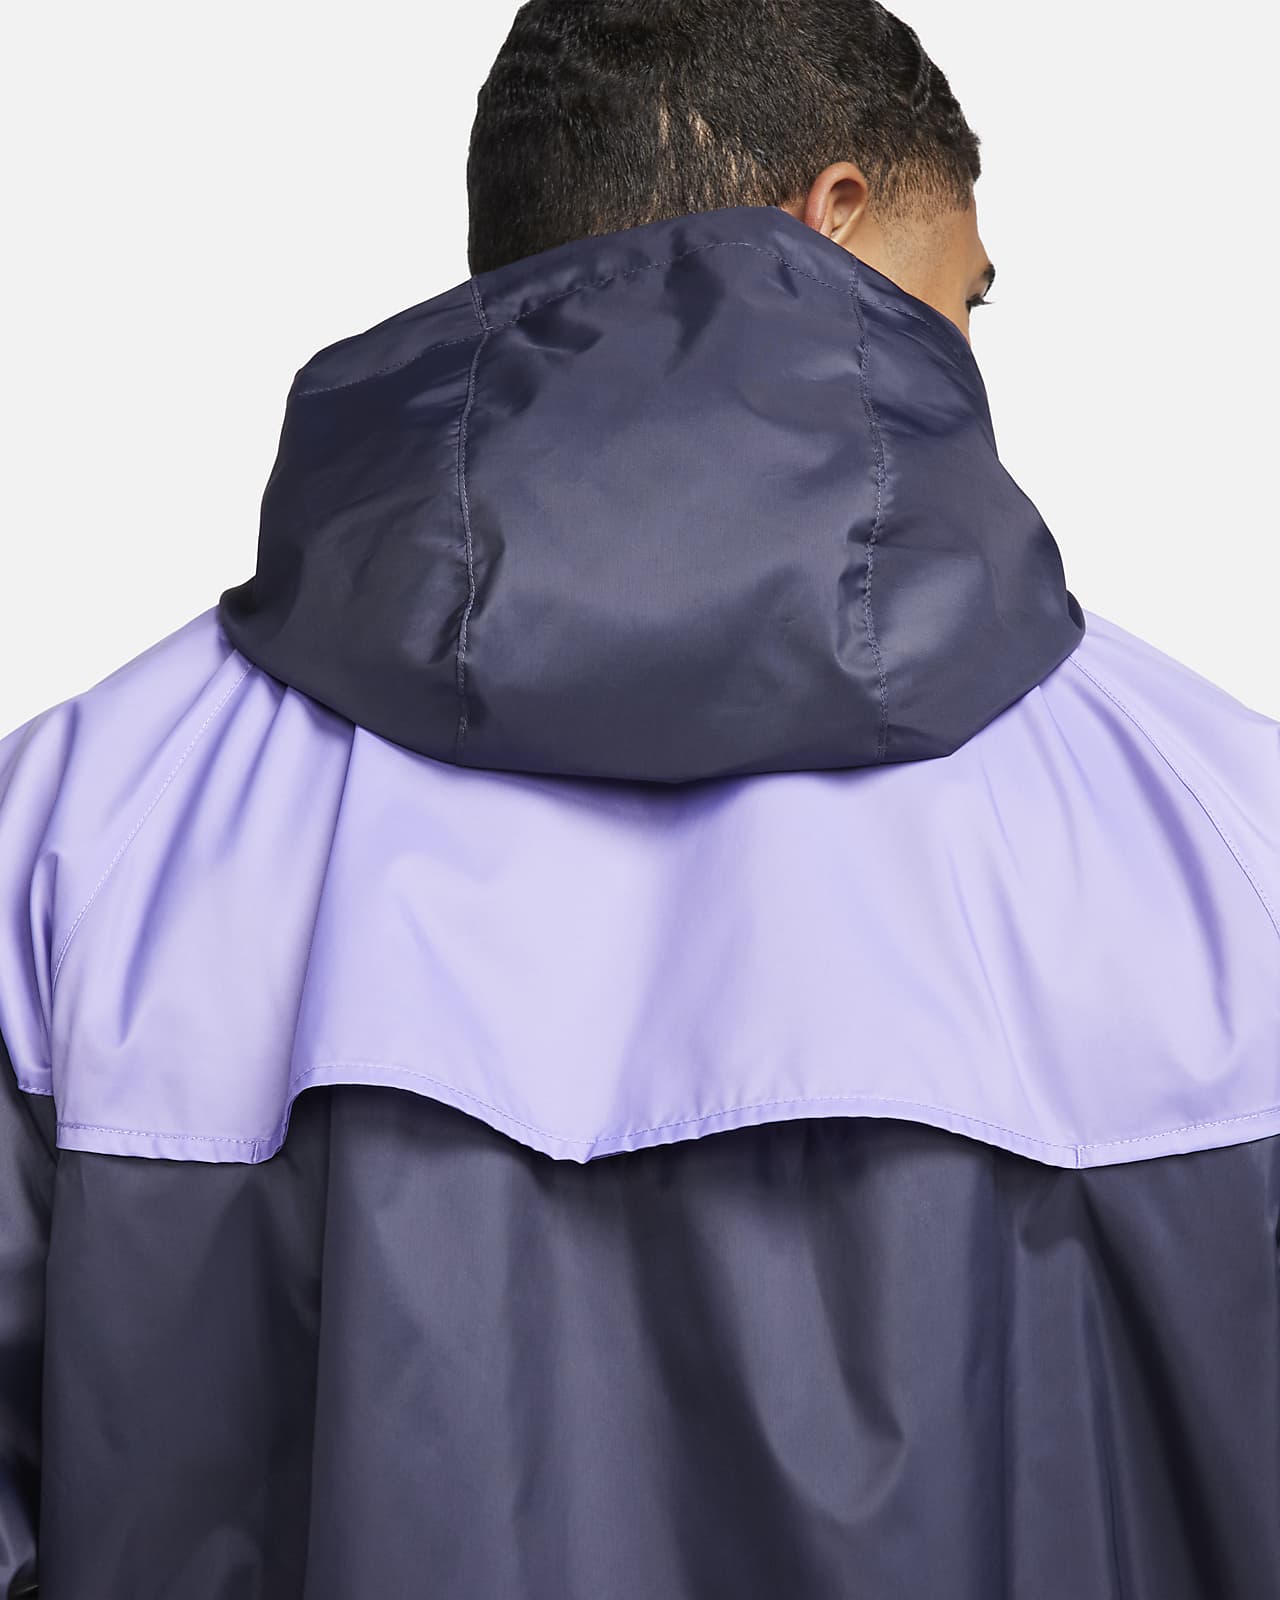 NIKE Sportswear Windrunner Zip-Up Jacket DA0001 014 - Shiekh